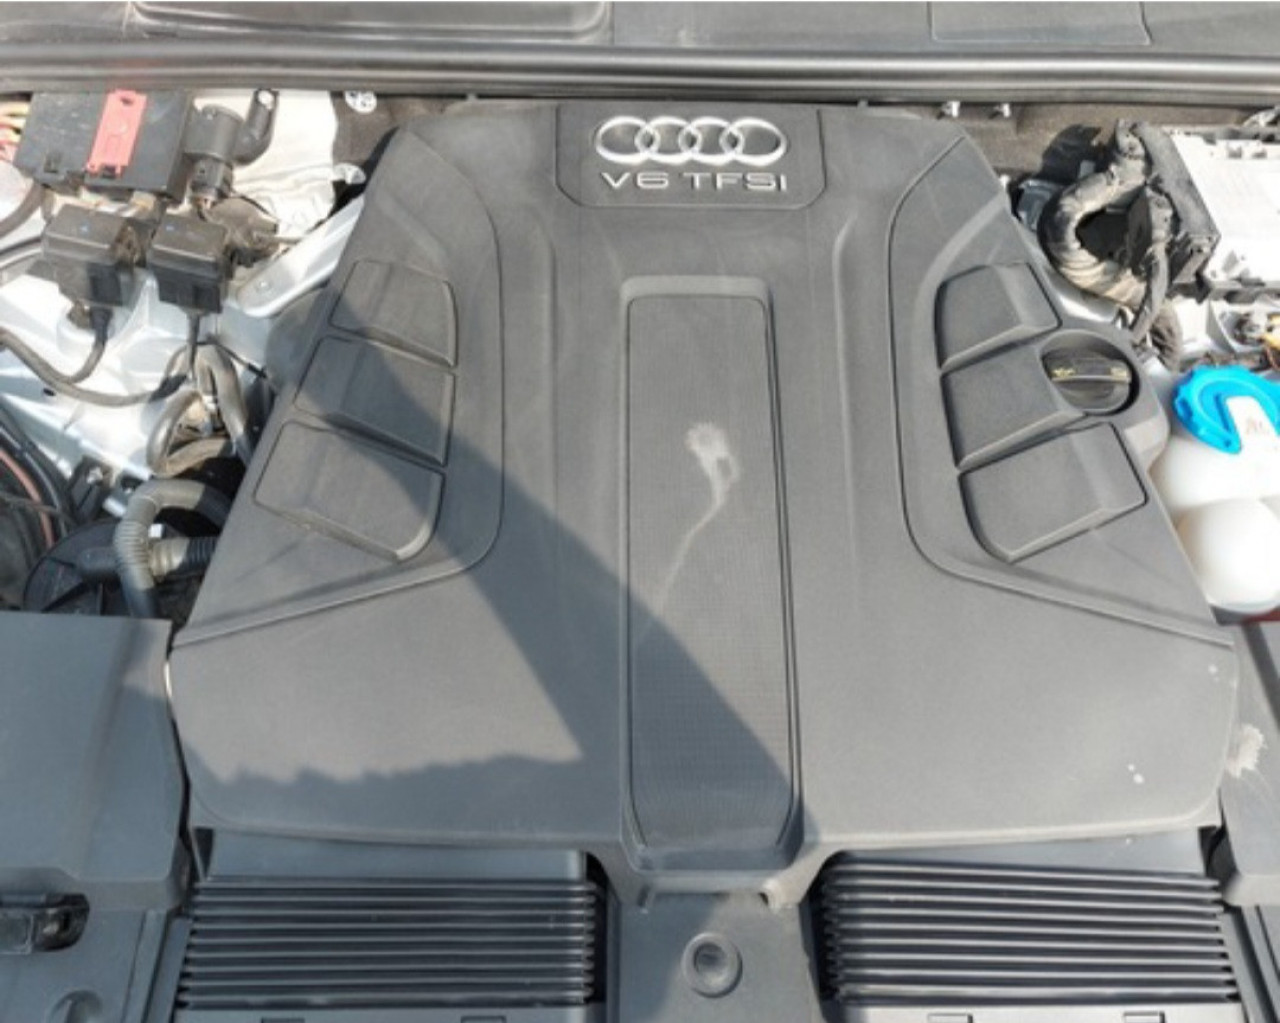 Audi Q7, Carros, Bissau